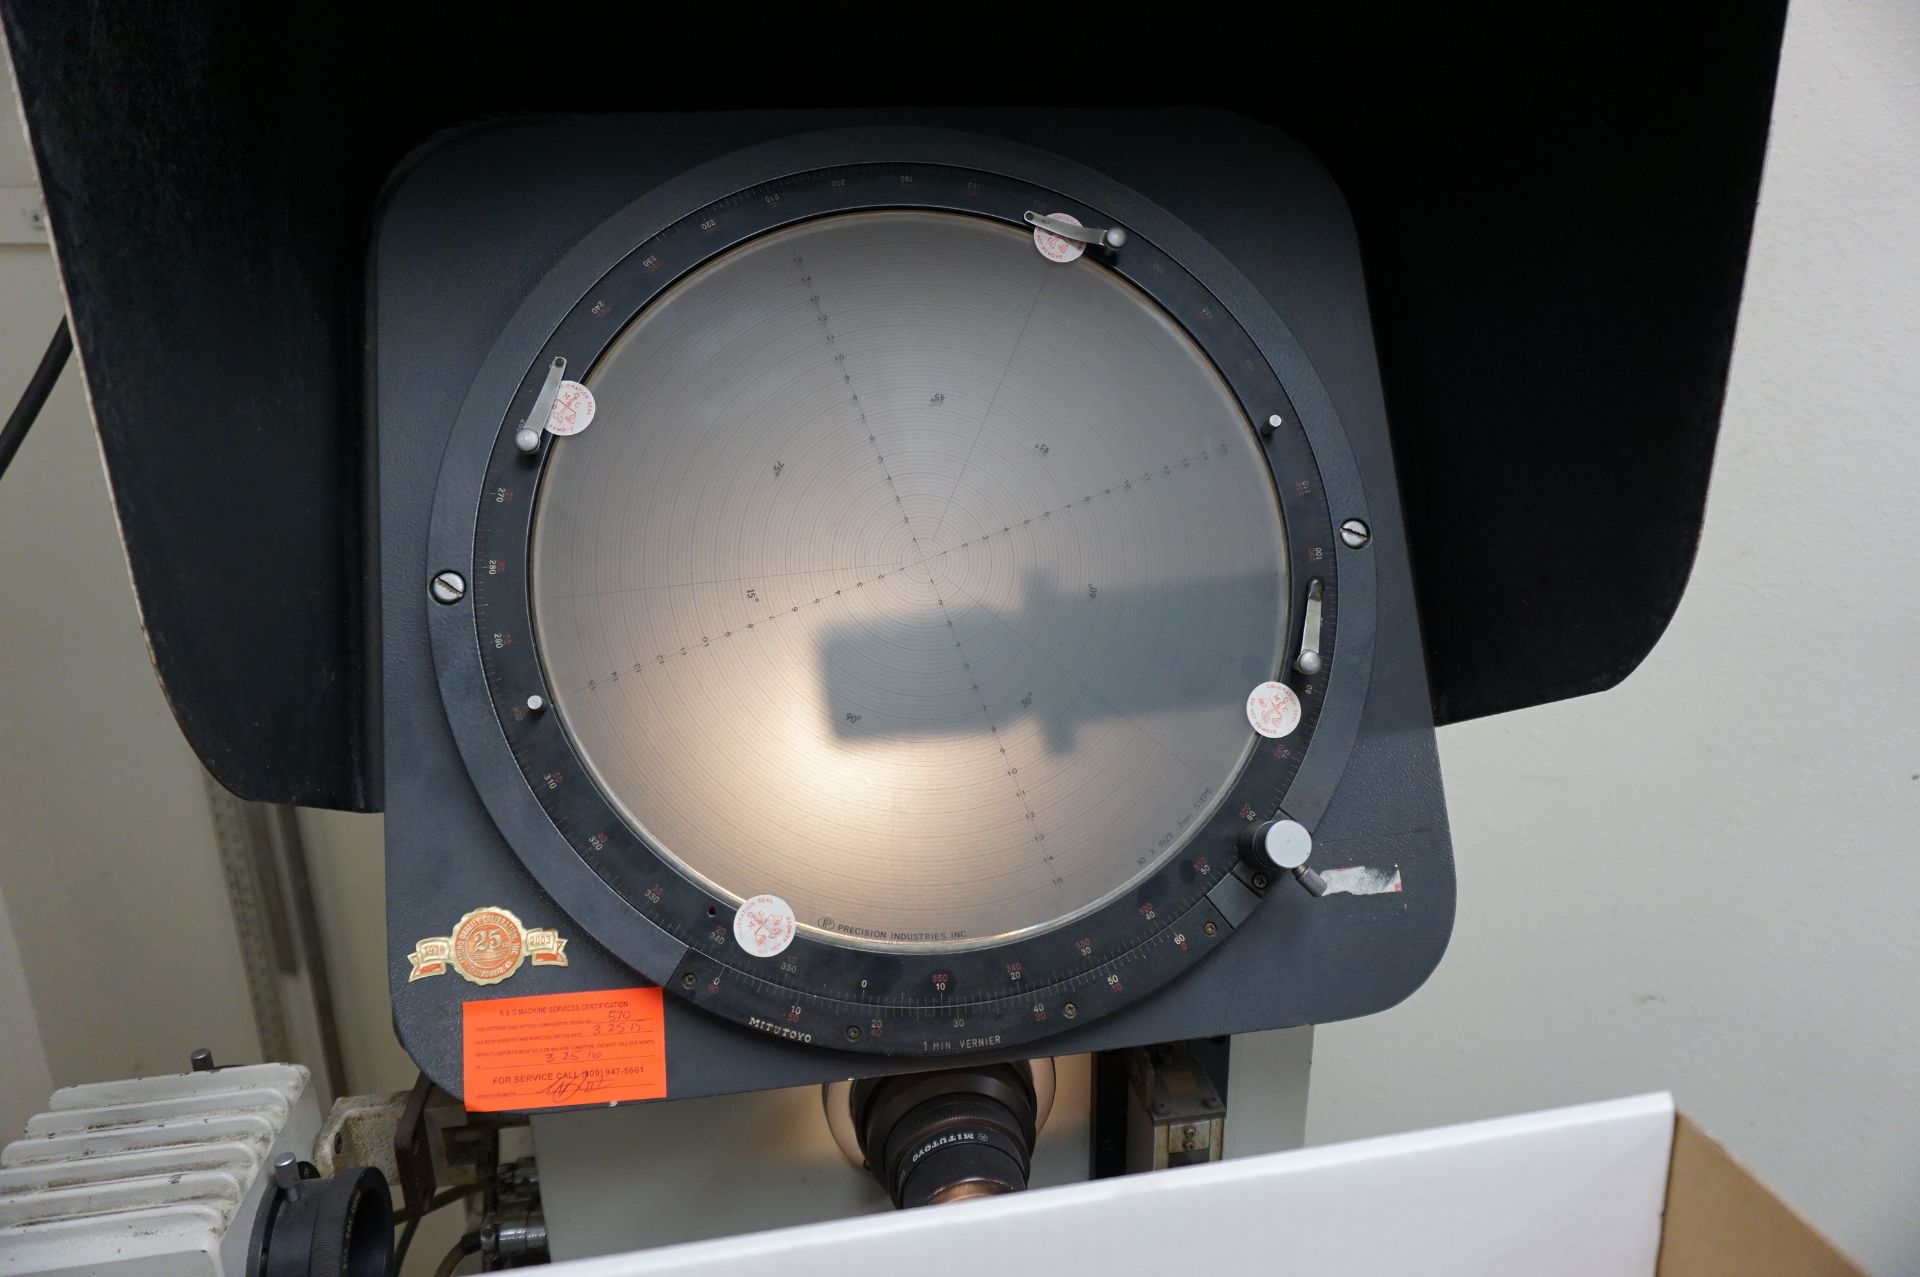 MITUTOYO PH-350 OPTICAL COMPARATOR, CODE 172-101, S/N 570 WITH HEIDENHAIN ND-1100 QUADRA-CHEK DRO, - Image 2 of 7